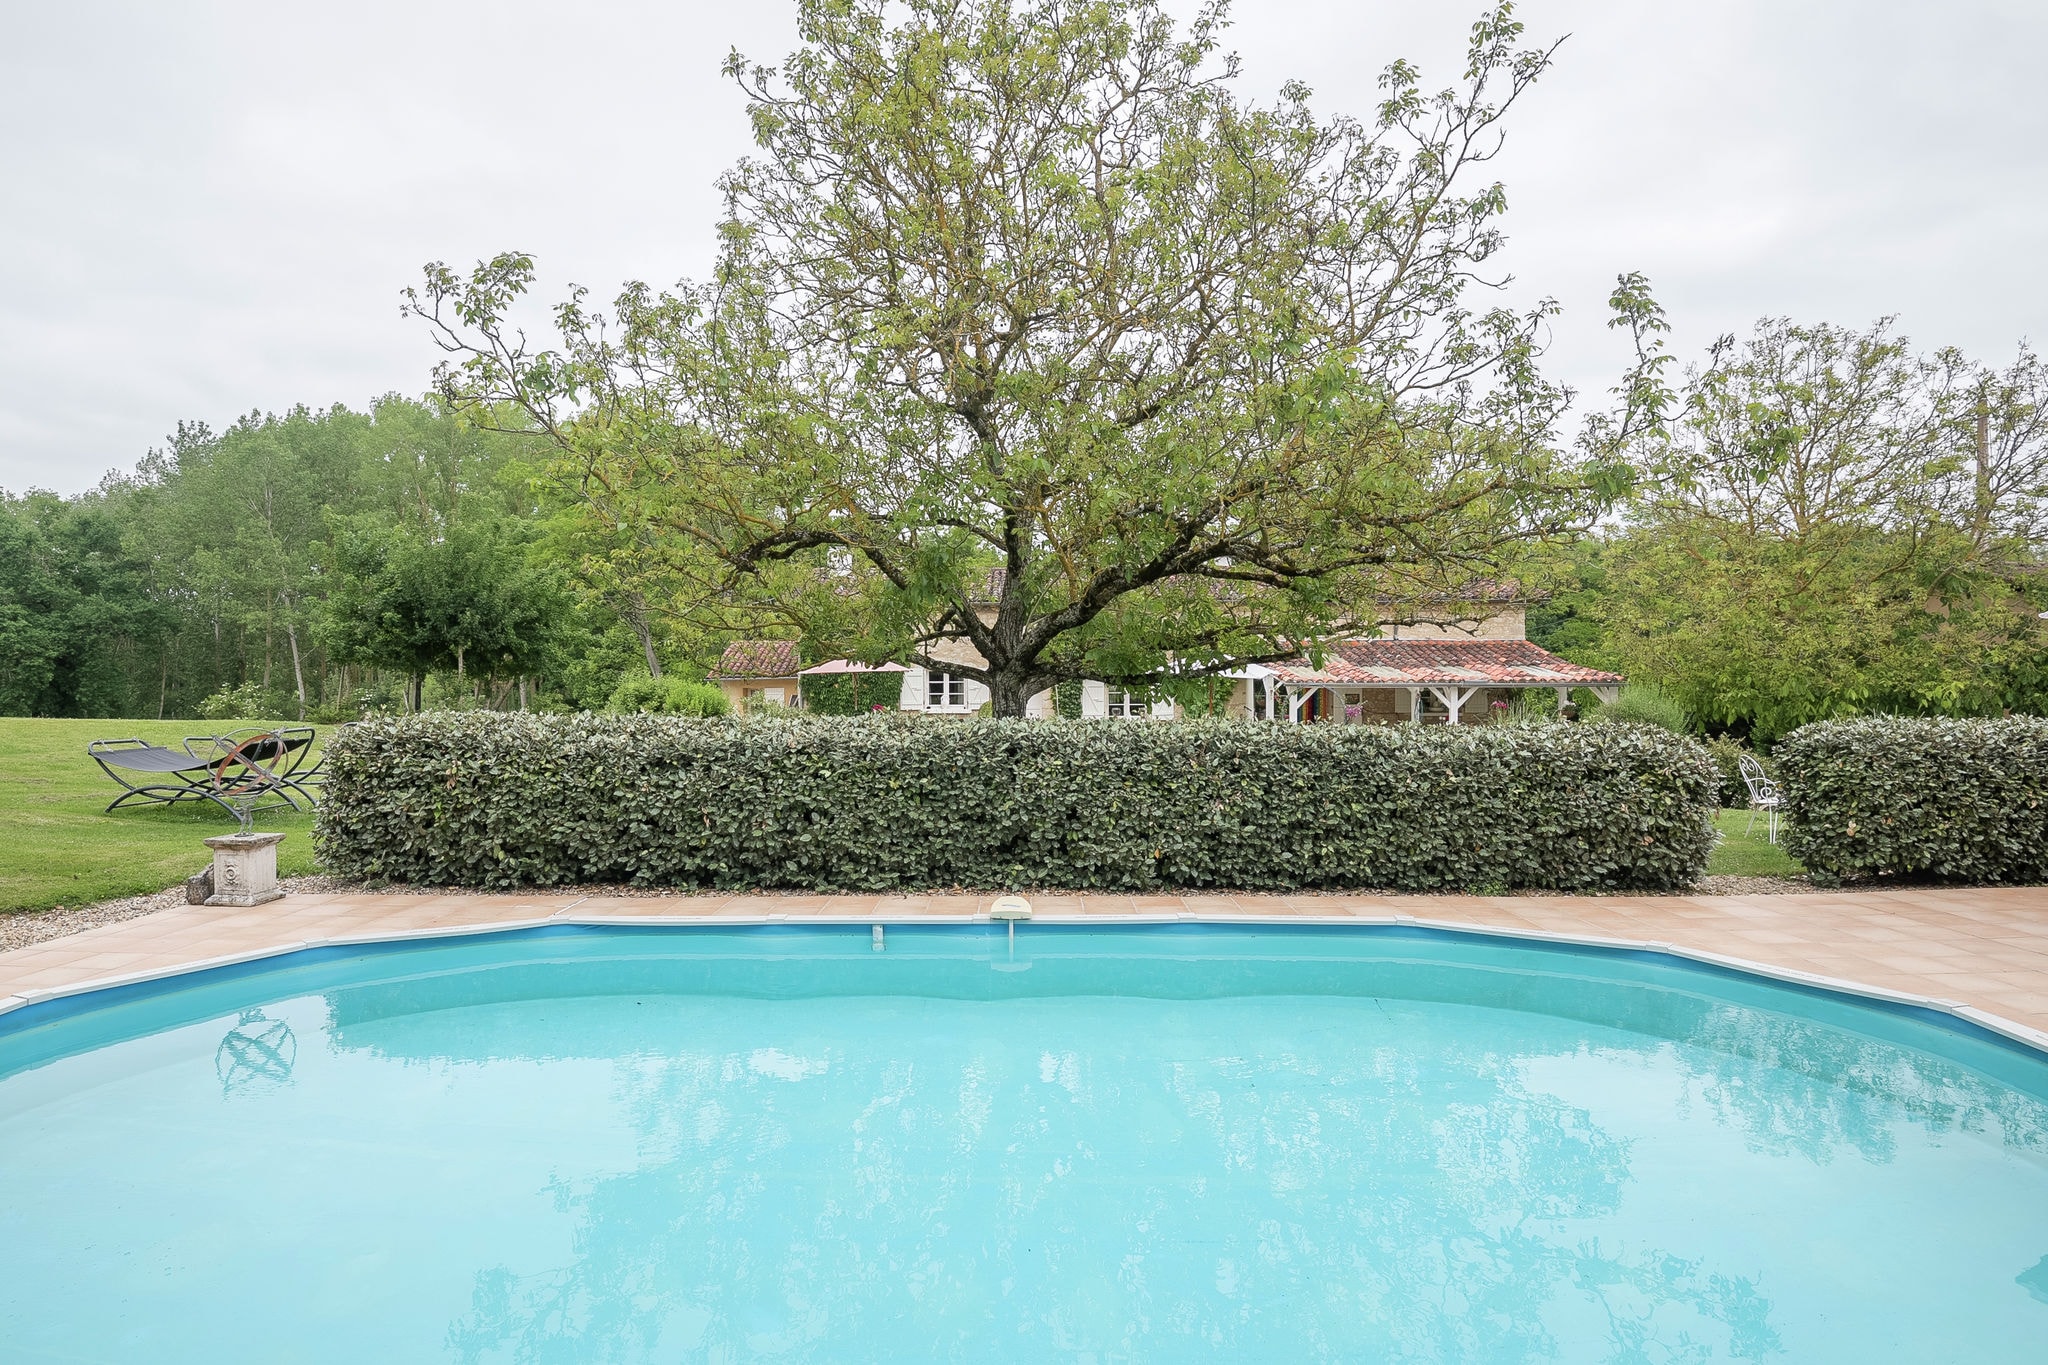 Landhuis in omgeving Beaumont met een grote tuin en prive zwembad.